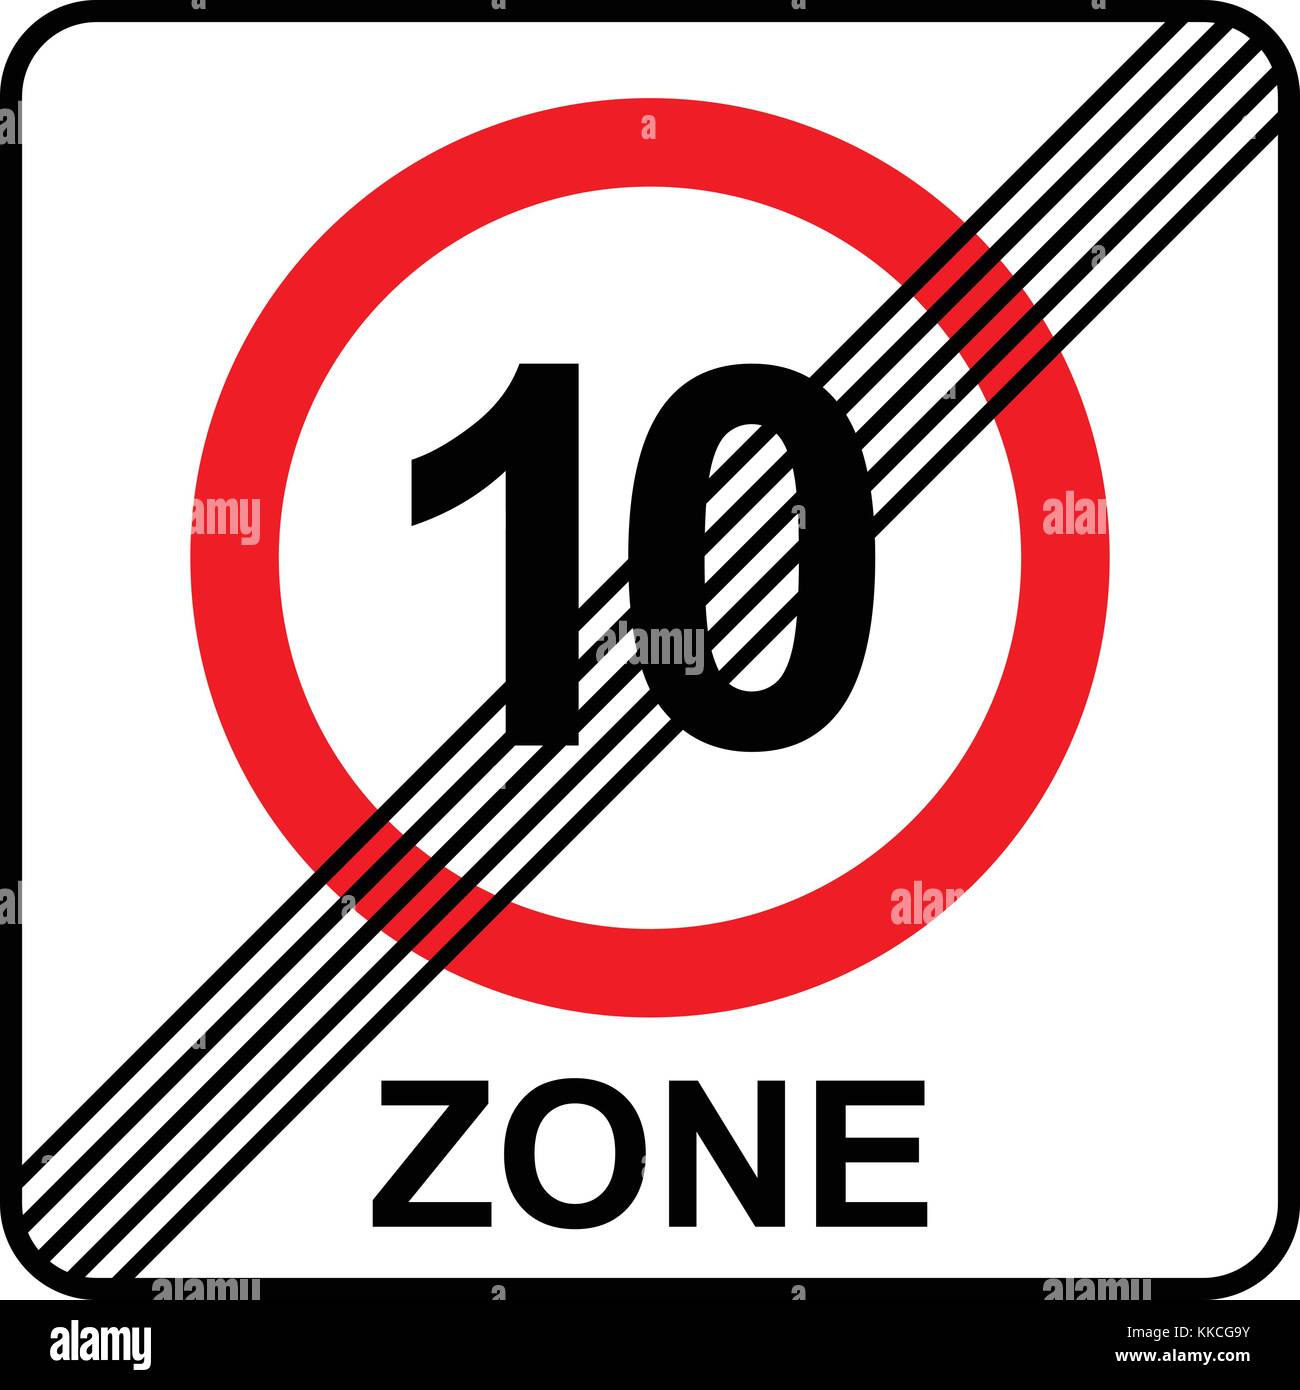 Il limite massimo di velocità 10 zone fine segno, illustrazione vettoriale. Illustrazione Vettoriale